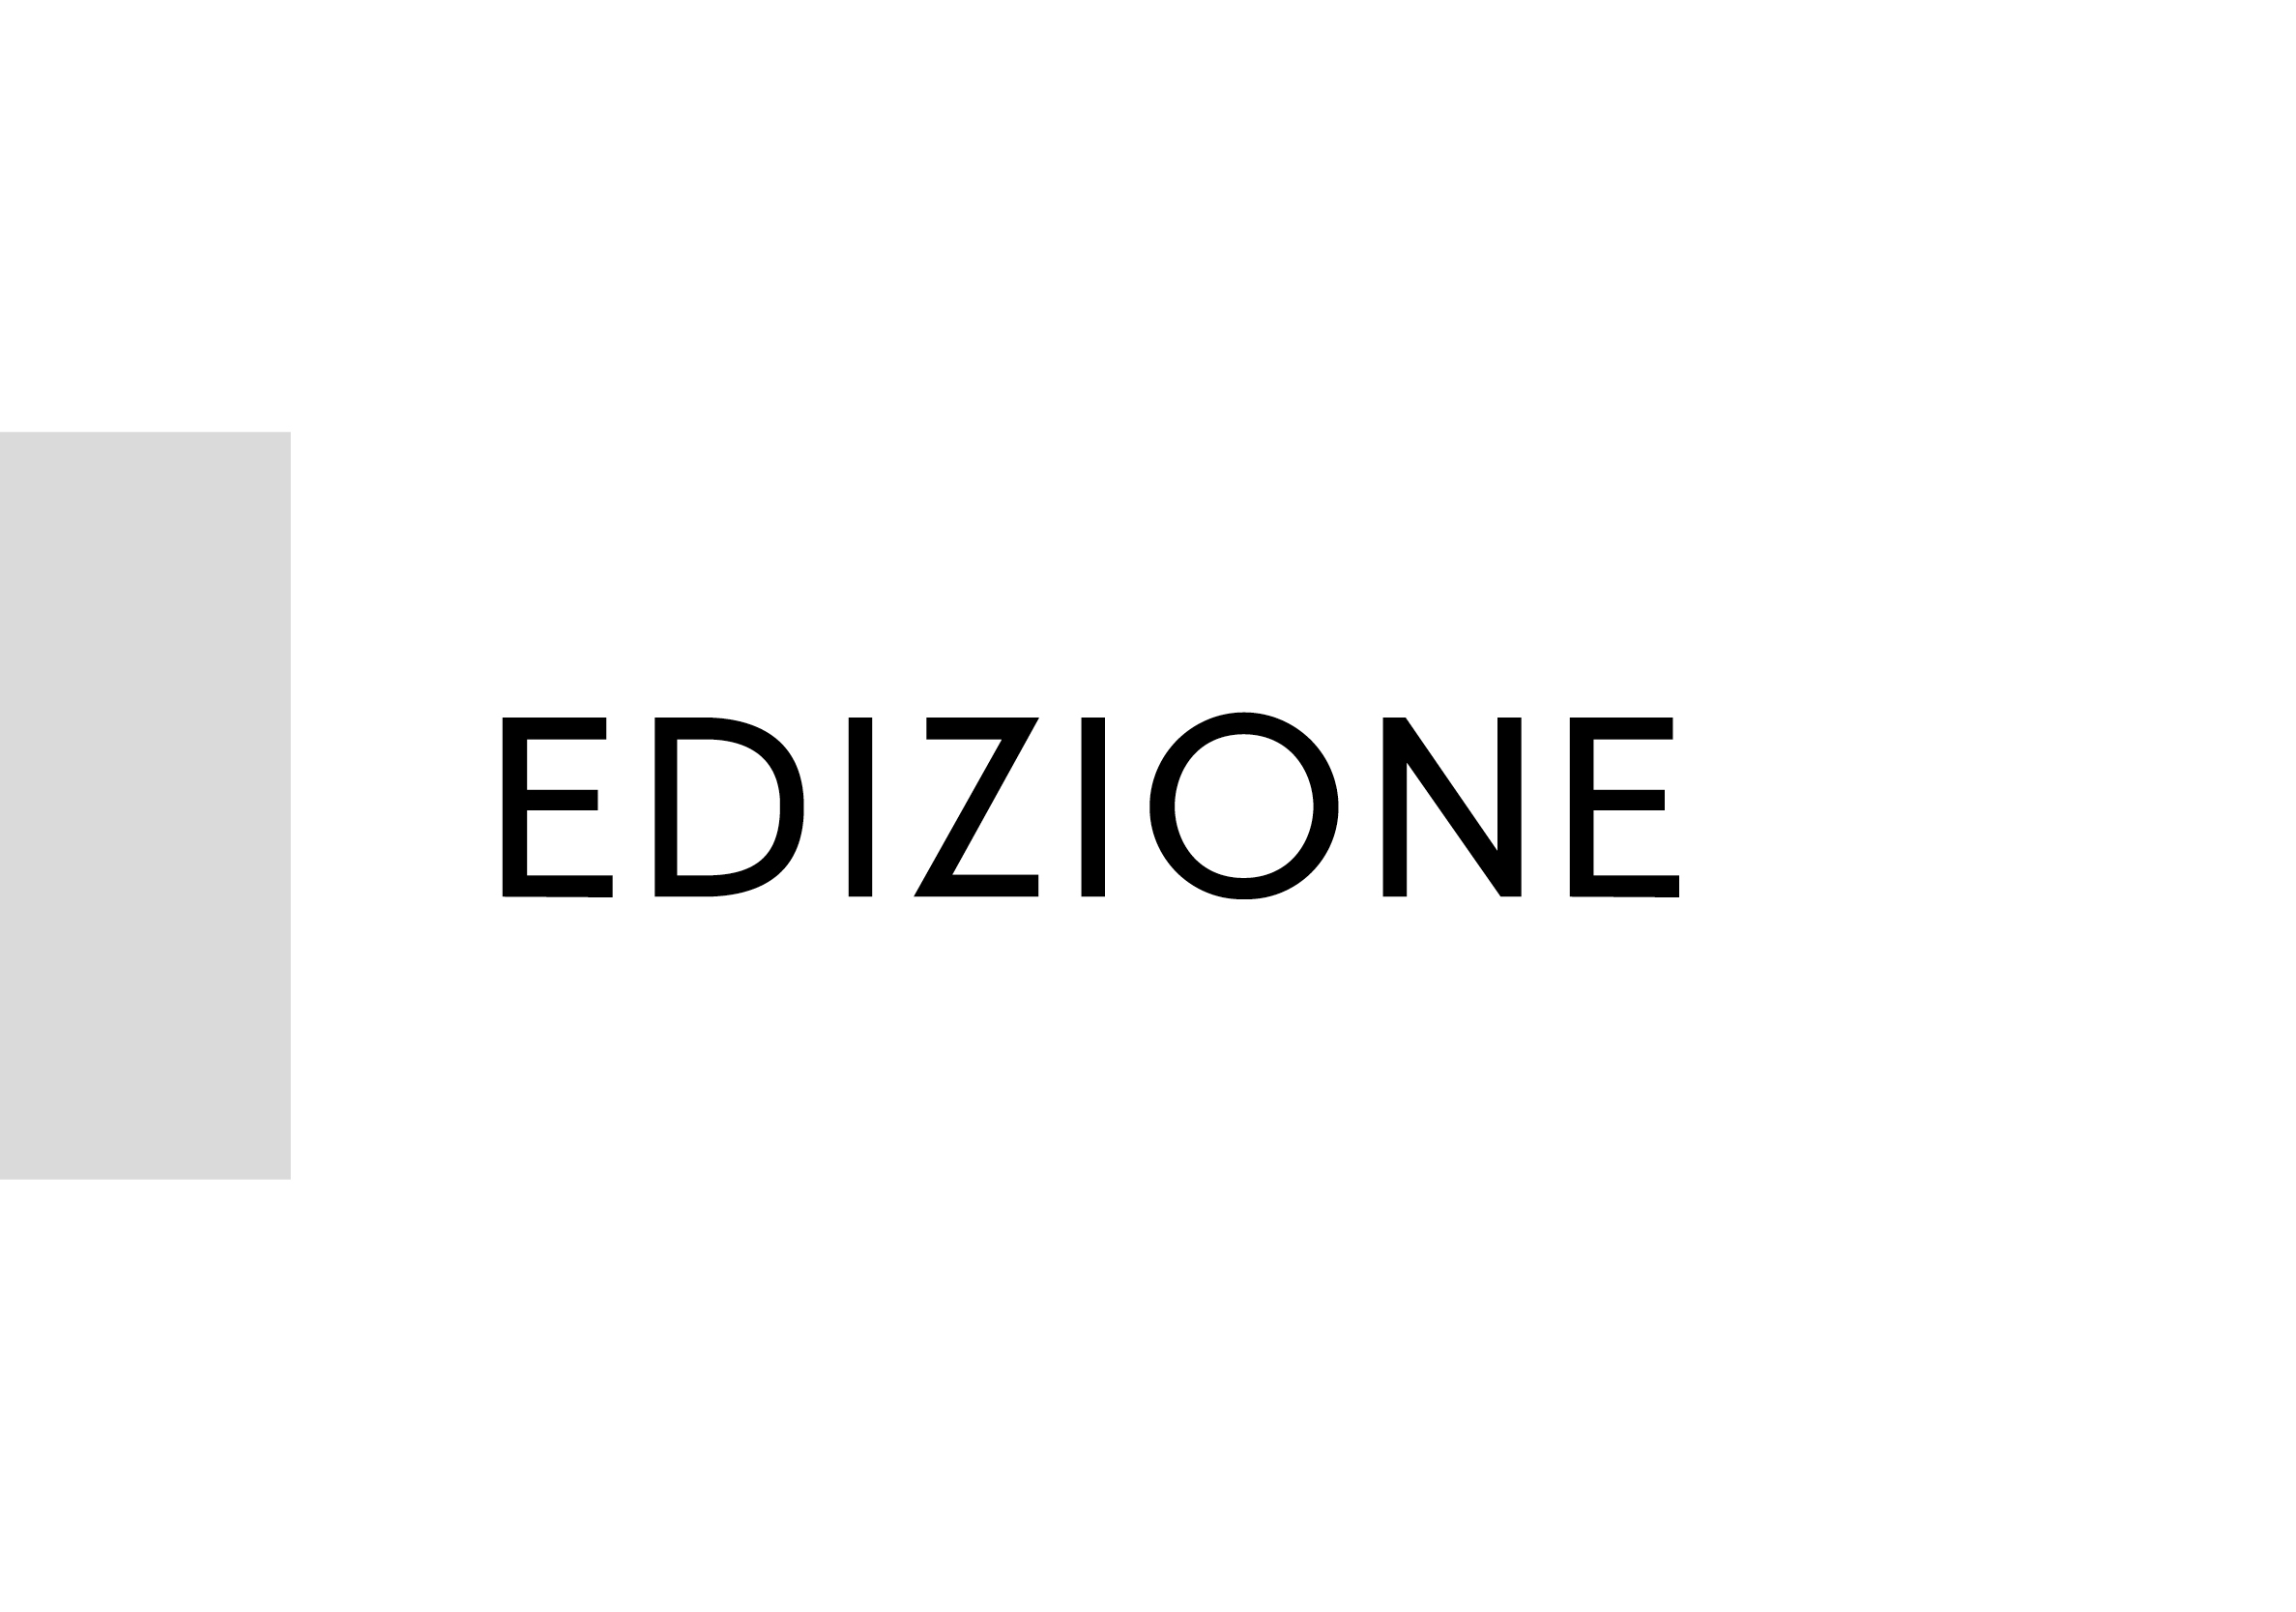 Zero3zero9 supporta Edizione nella realizzazione del bilancio consolidato attraverso il controllo testi e la correzione bozze di tutto il documento in italiano e inglese. 